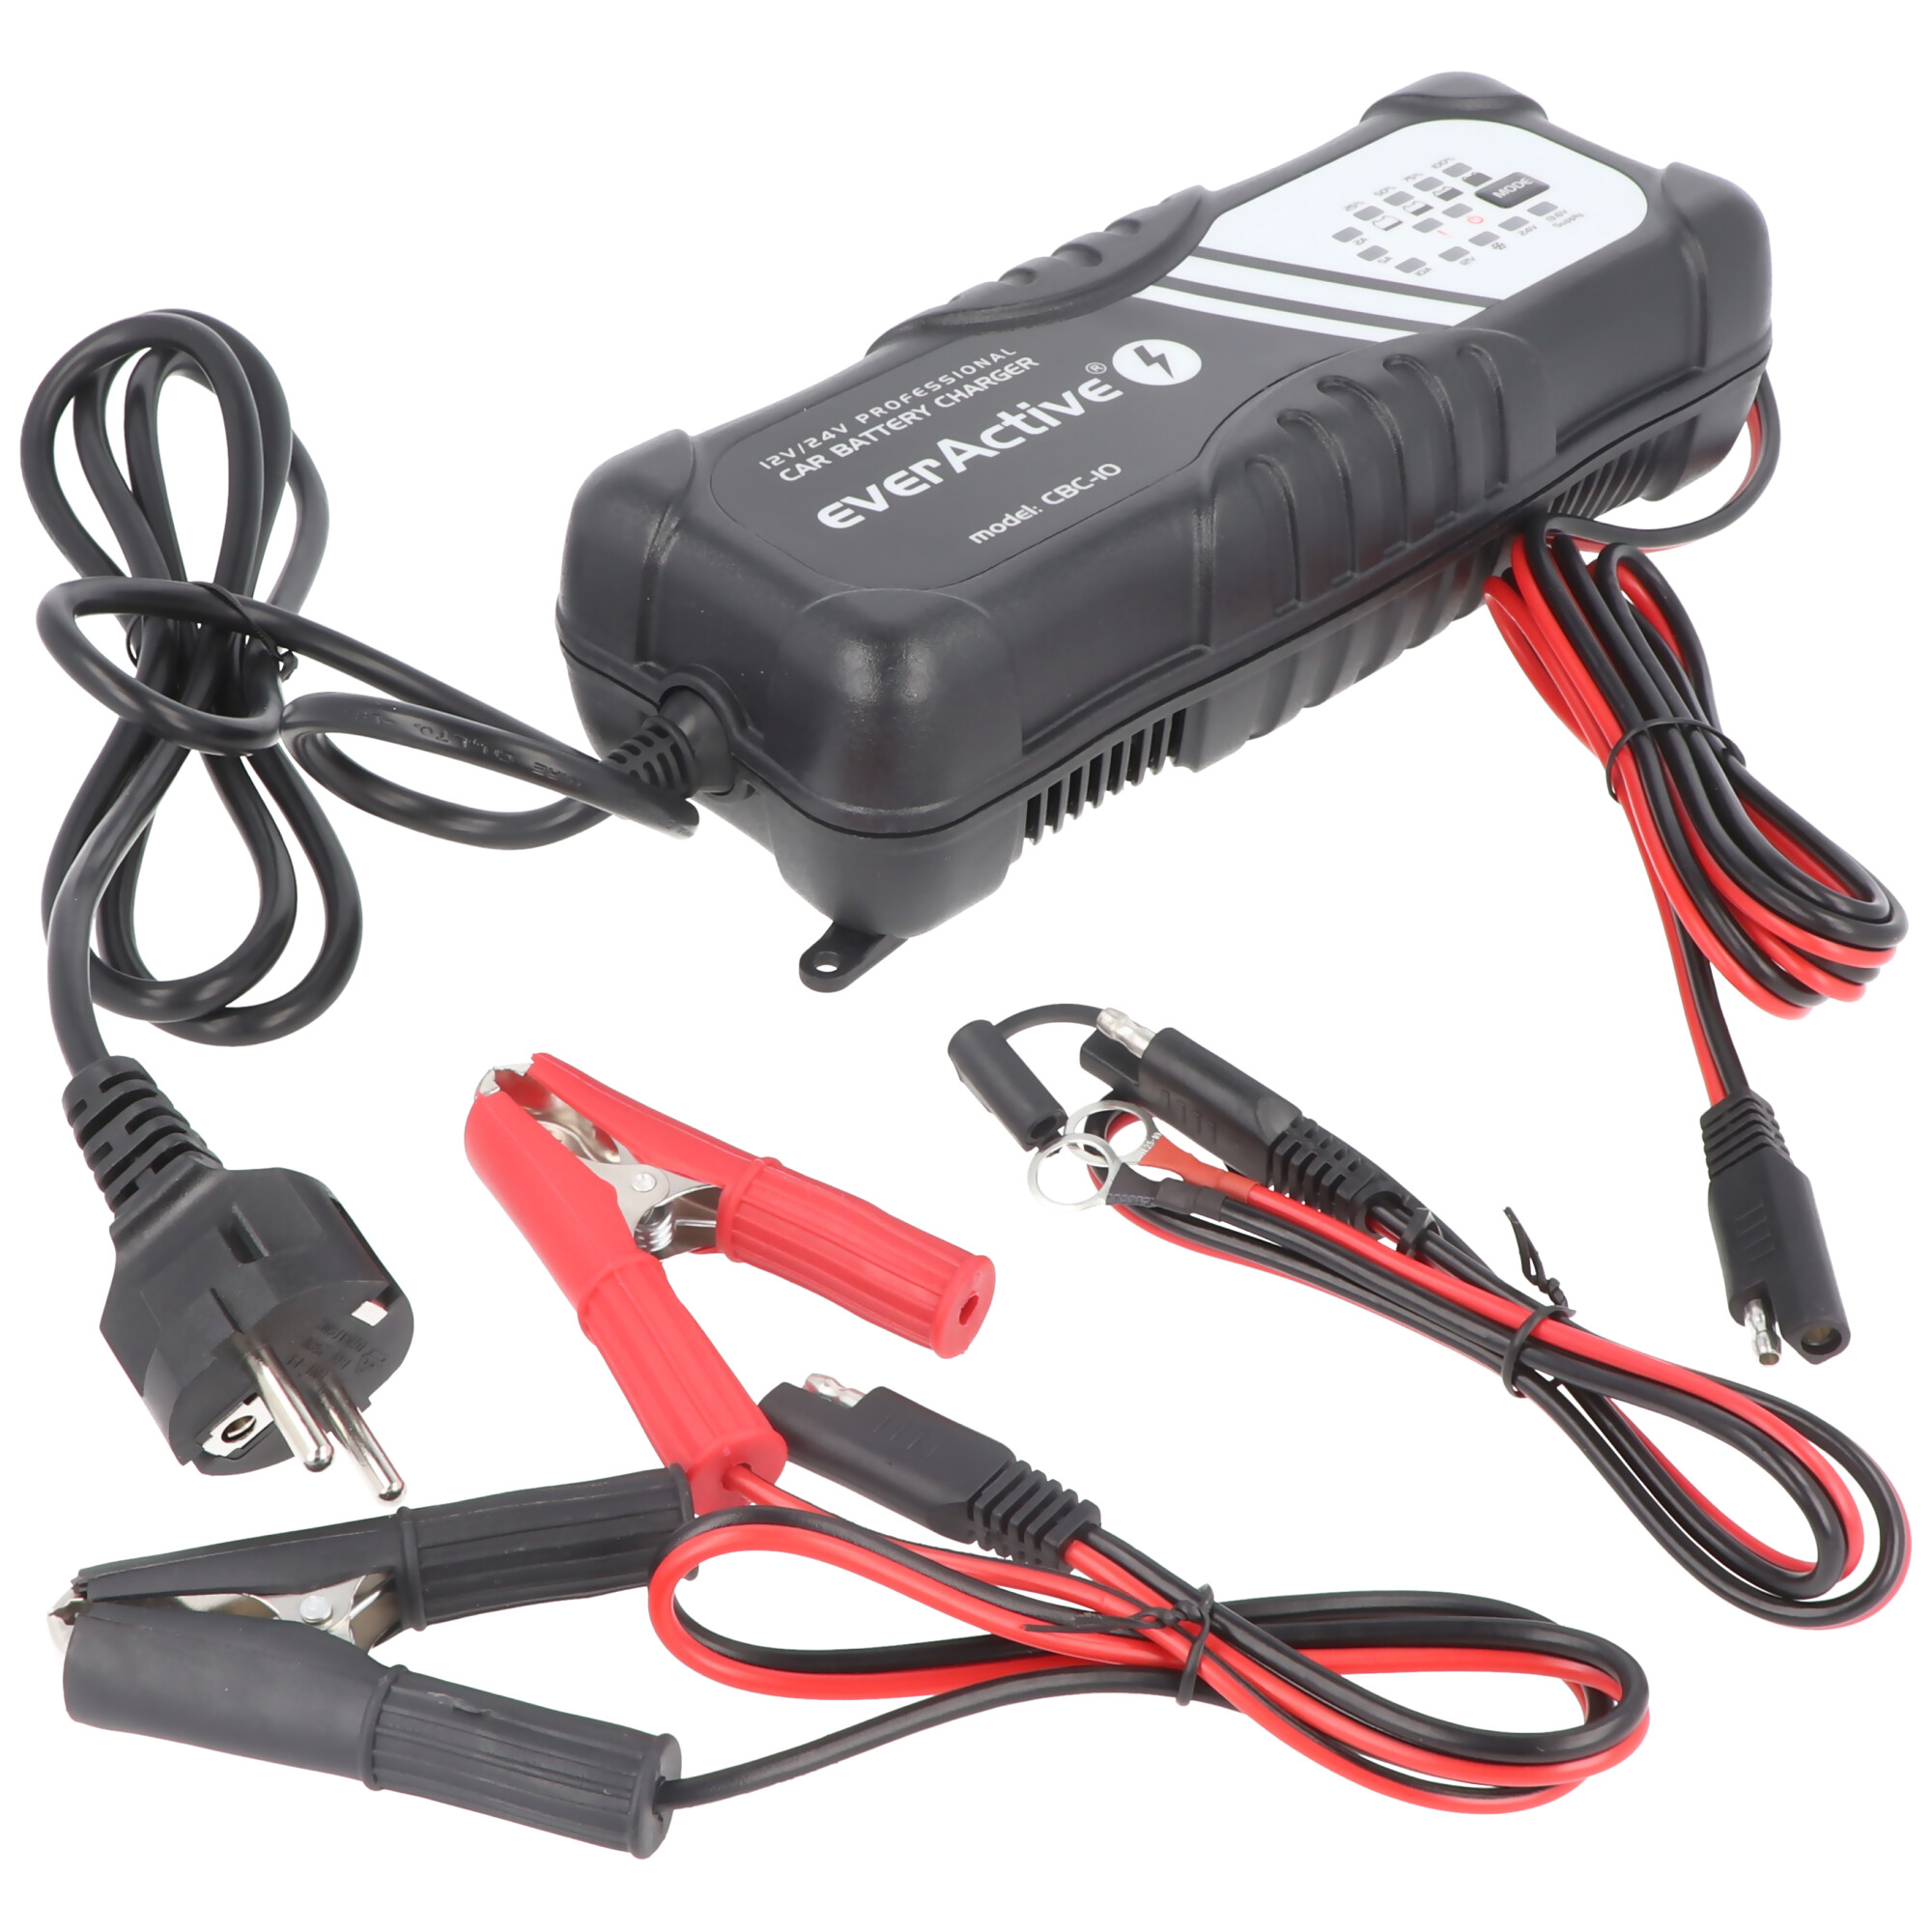 Chargeur USB voiture 12V / 24V pour Falk GPS Adaptateur de charge USB